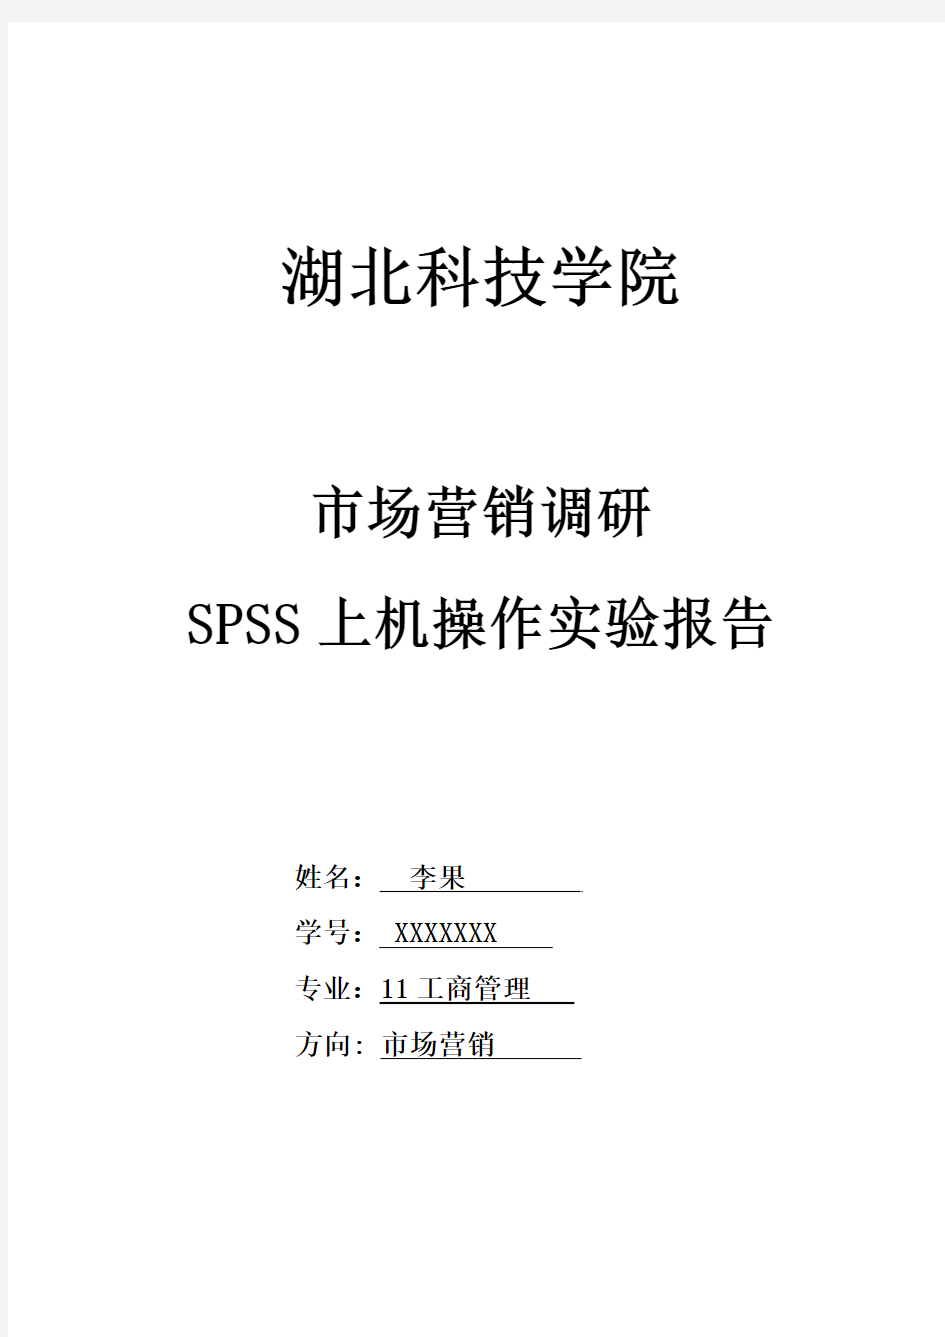 (最新版)SPSS上机实验报告